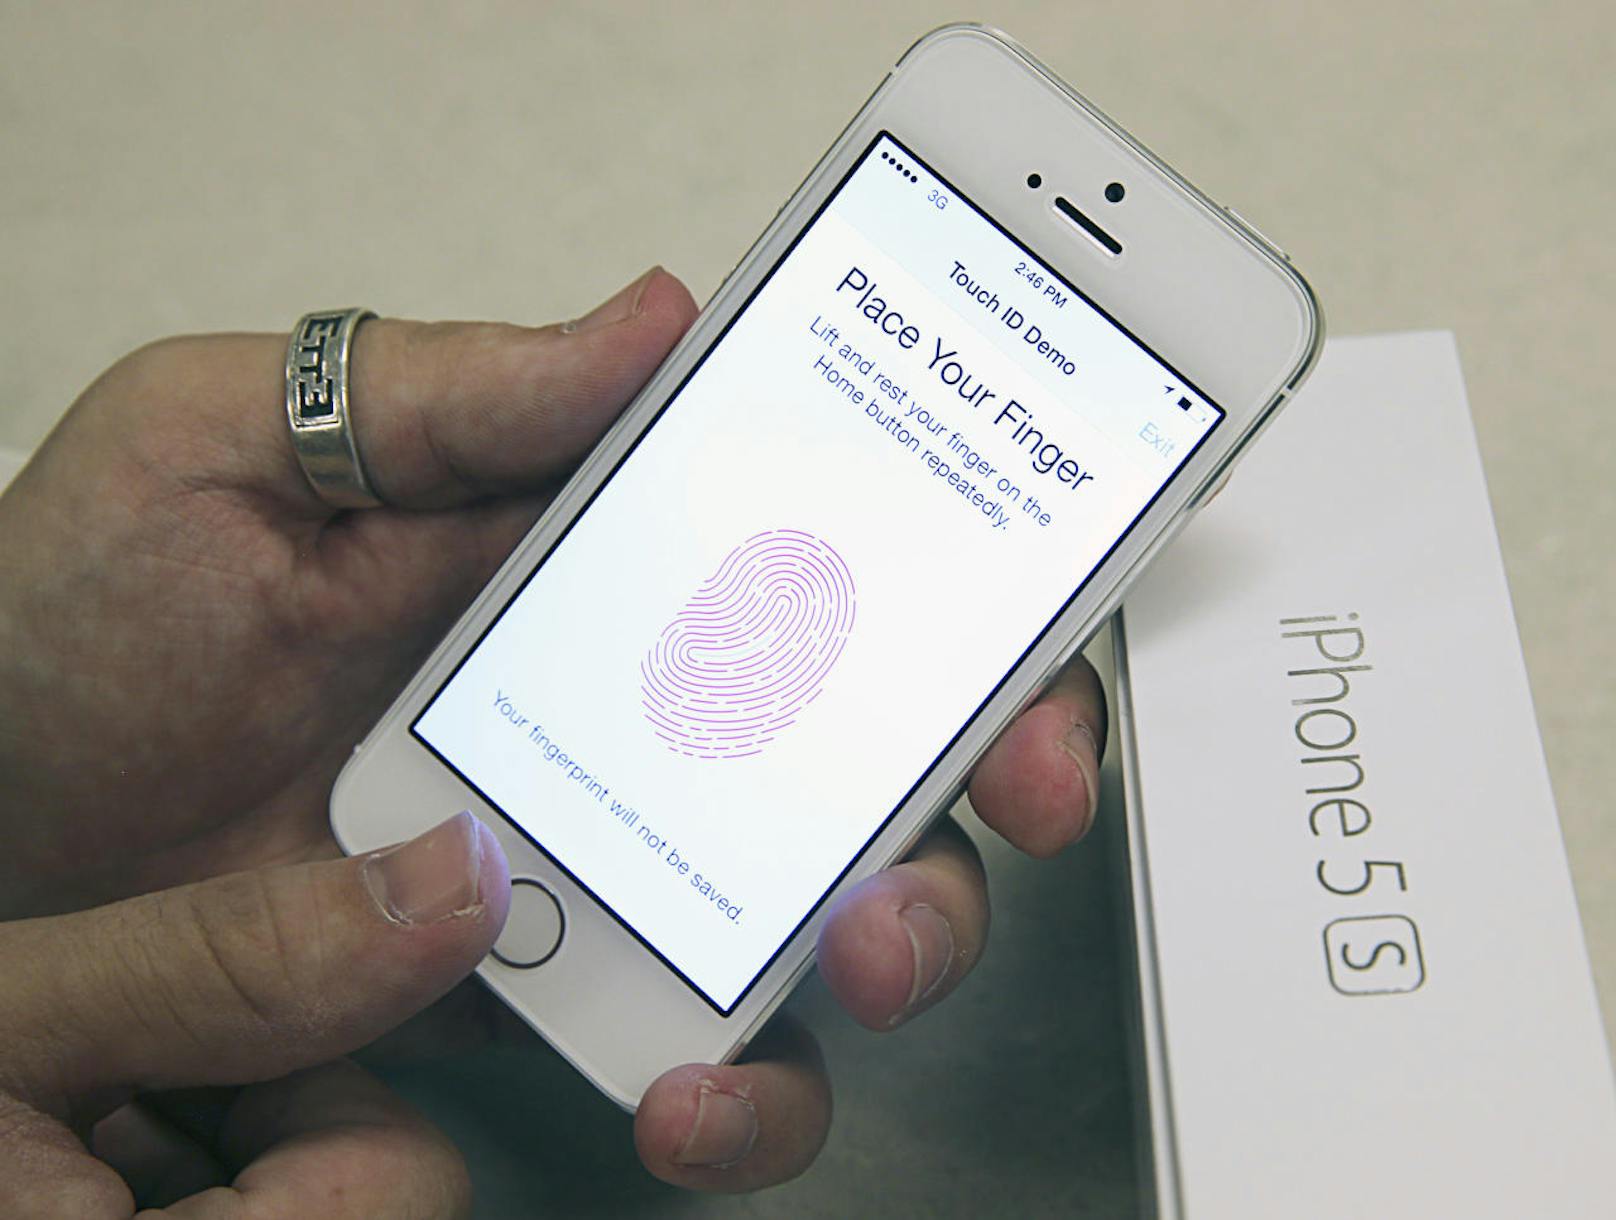 Die 3D-Gesichtserkennung bei Apple soll einst den Fingerabdruckscanner ersetzen, berichtet der Insider. Apple setzt seit 2013 auf Fingerabdrucksensoren.